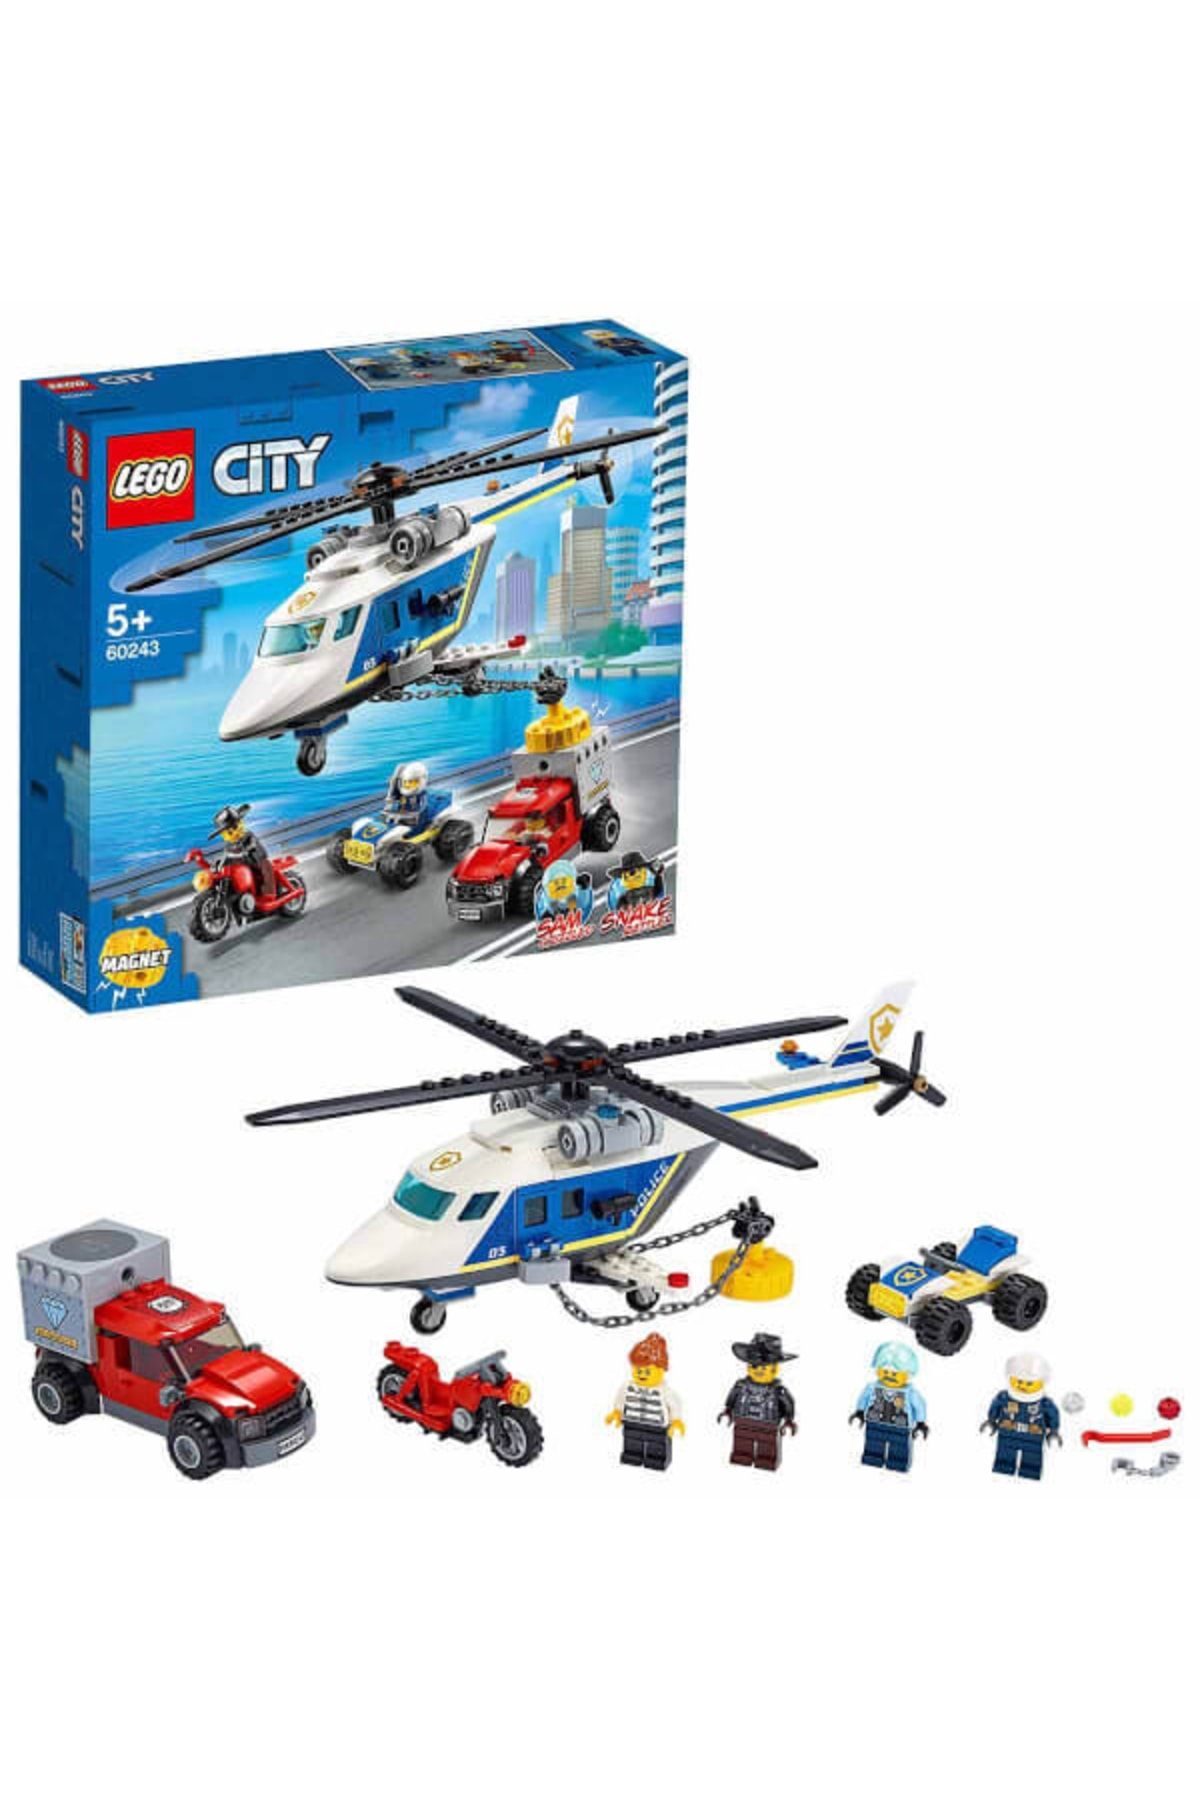 LEGO City Polis Helikopteri Takibi 60243 - Araçları Seven Çocuklar Için Yaratıcı Oyuncak Yapım Seti